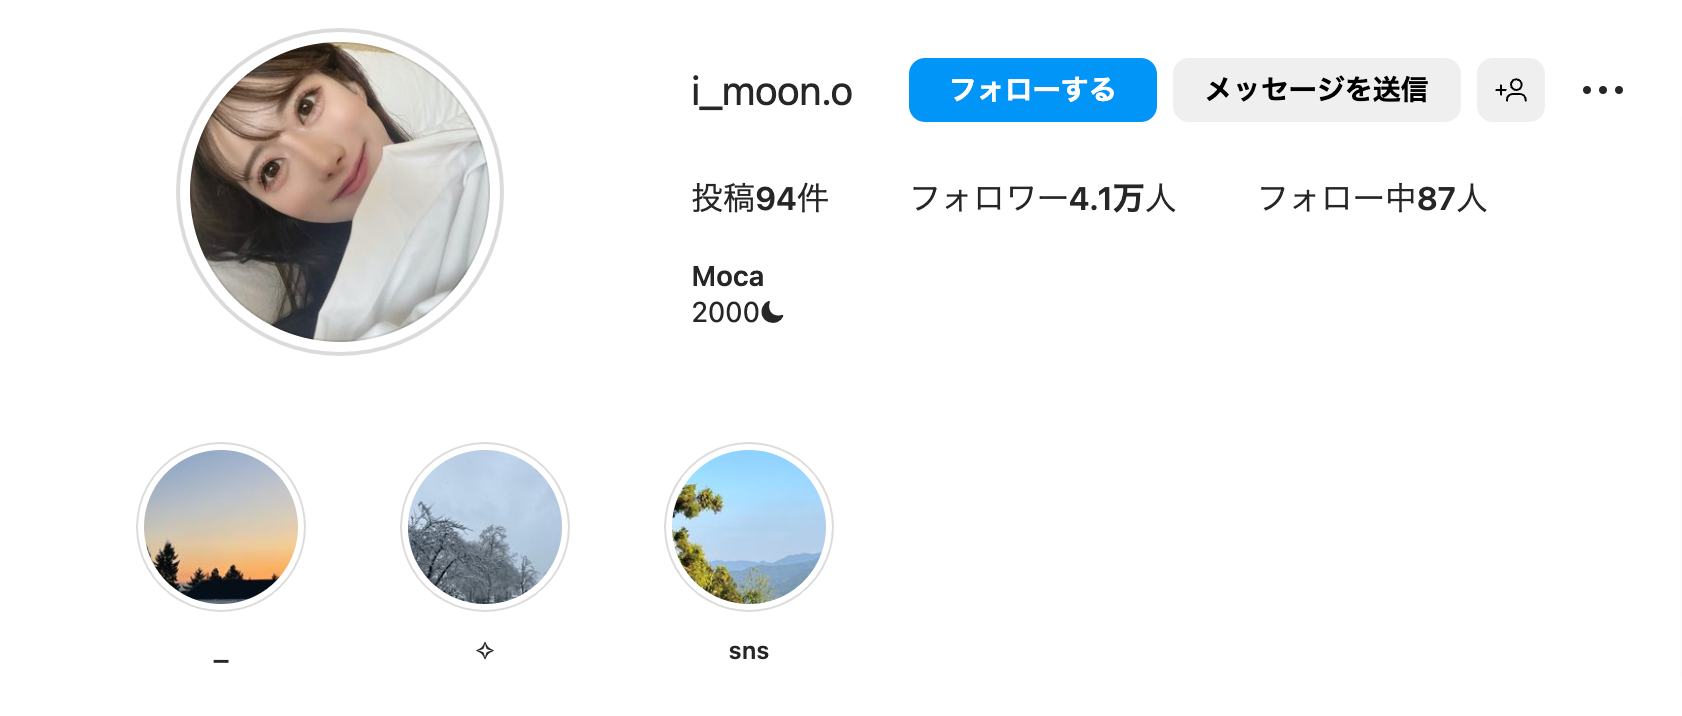 伊藤大海の彼女｜moca(モカ)のインスタグラムアカウント「@i_moon.o」